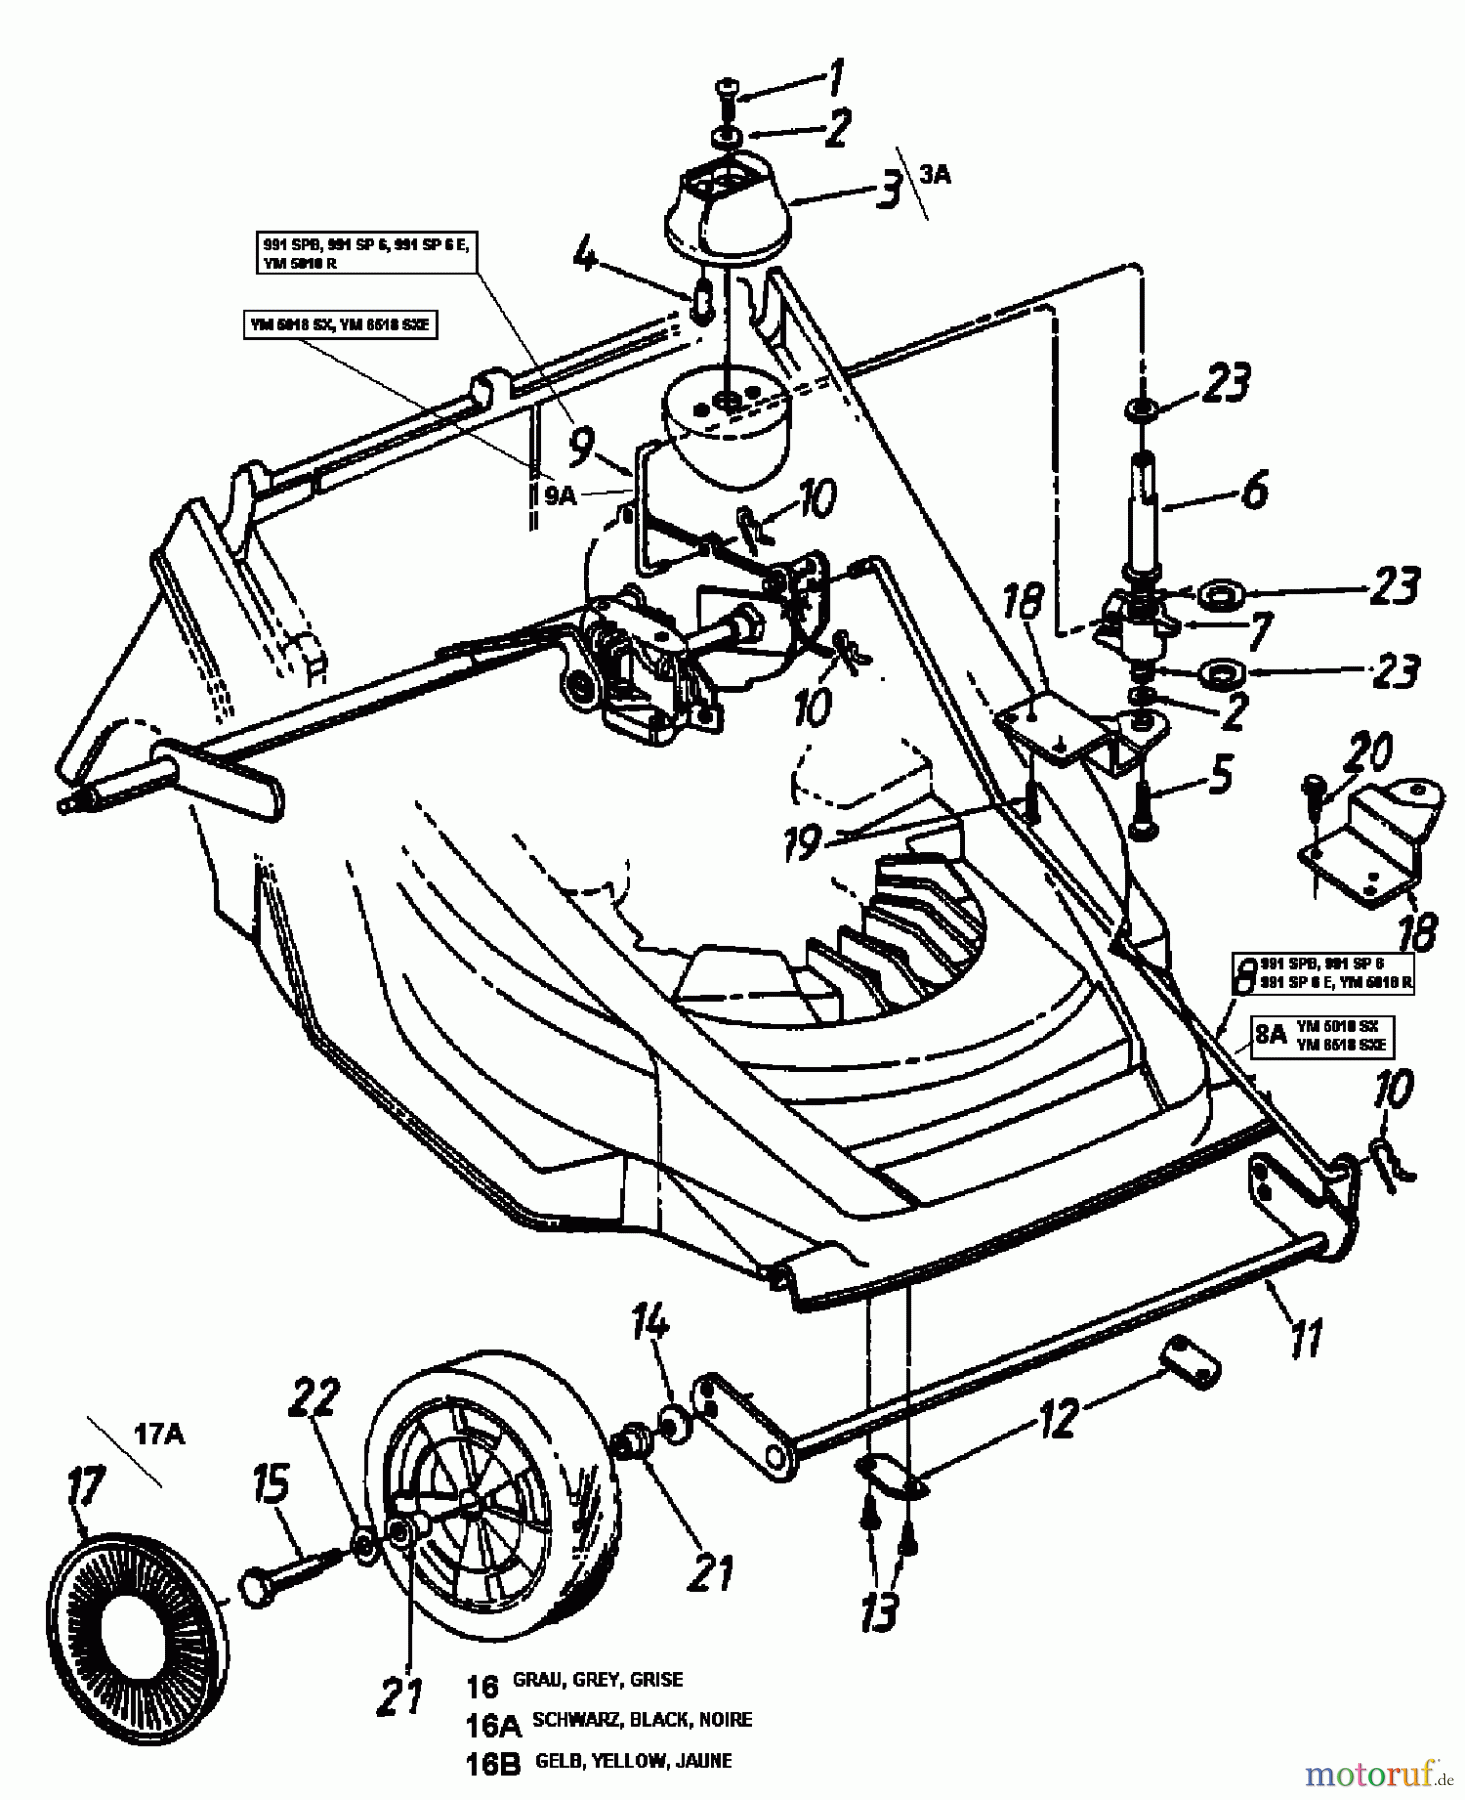  Lawnflite Motormäher mit Antrieb 991 SPB 12B-634A611  (2000) Räder vorne, Schnitthöhenverstellung